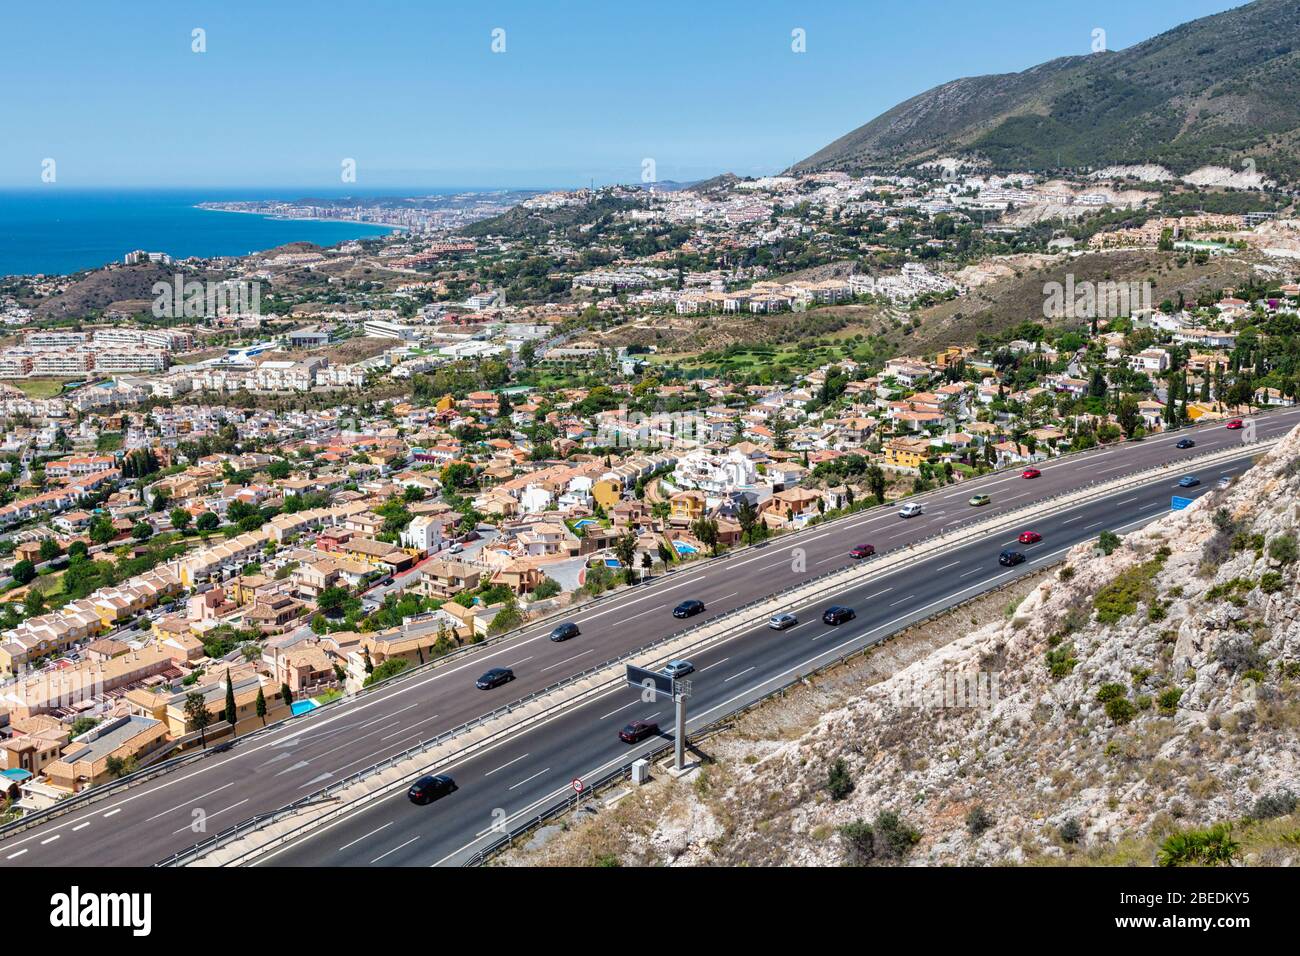 Vista aerea dell'autostrada A-7, e-15. Costa del Sol, Provincia di Malaga, Spagna. La città sulla sinistra è Arroyo de la Miel. In lontananza è Fuenga Foto Stock